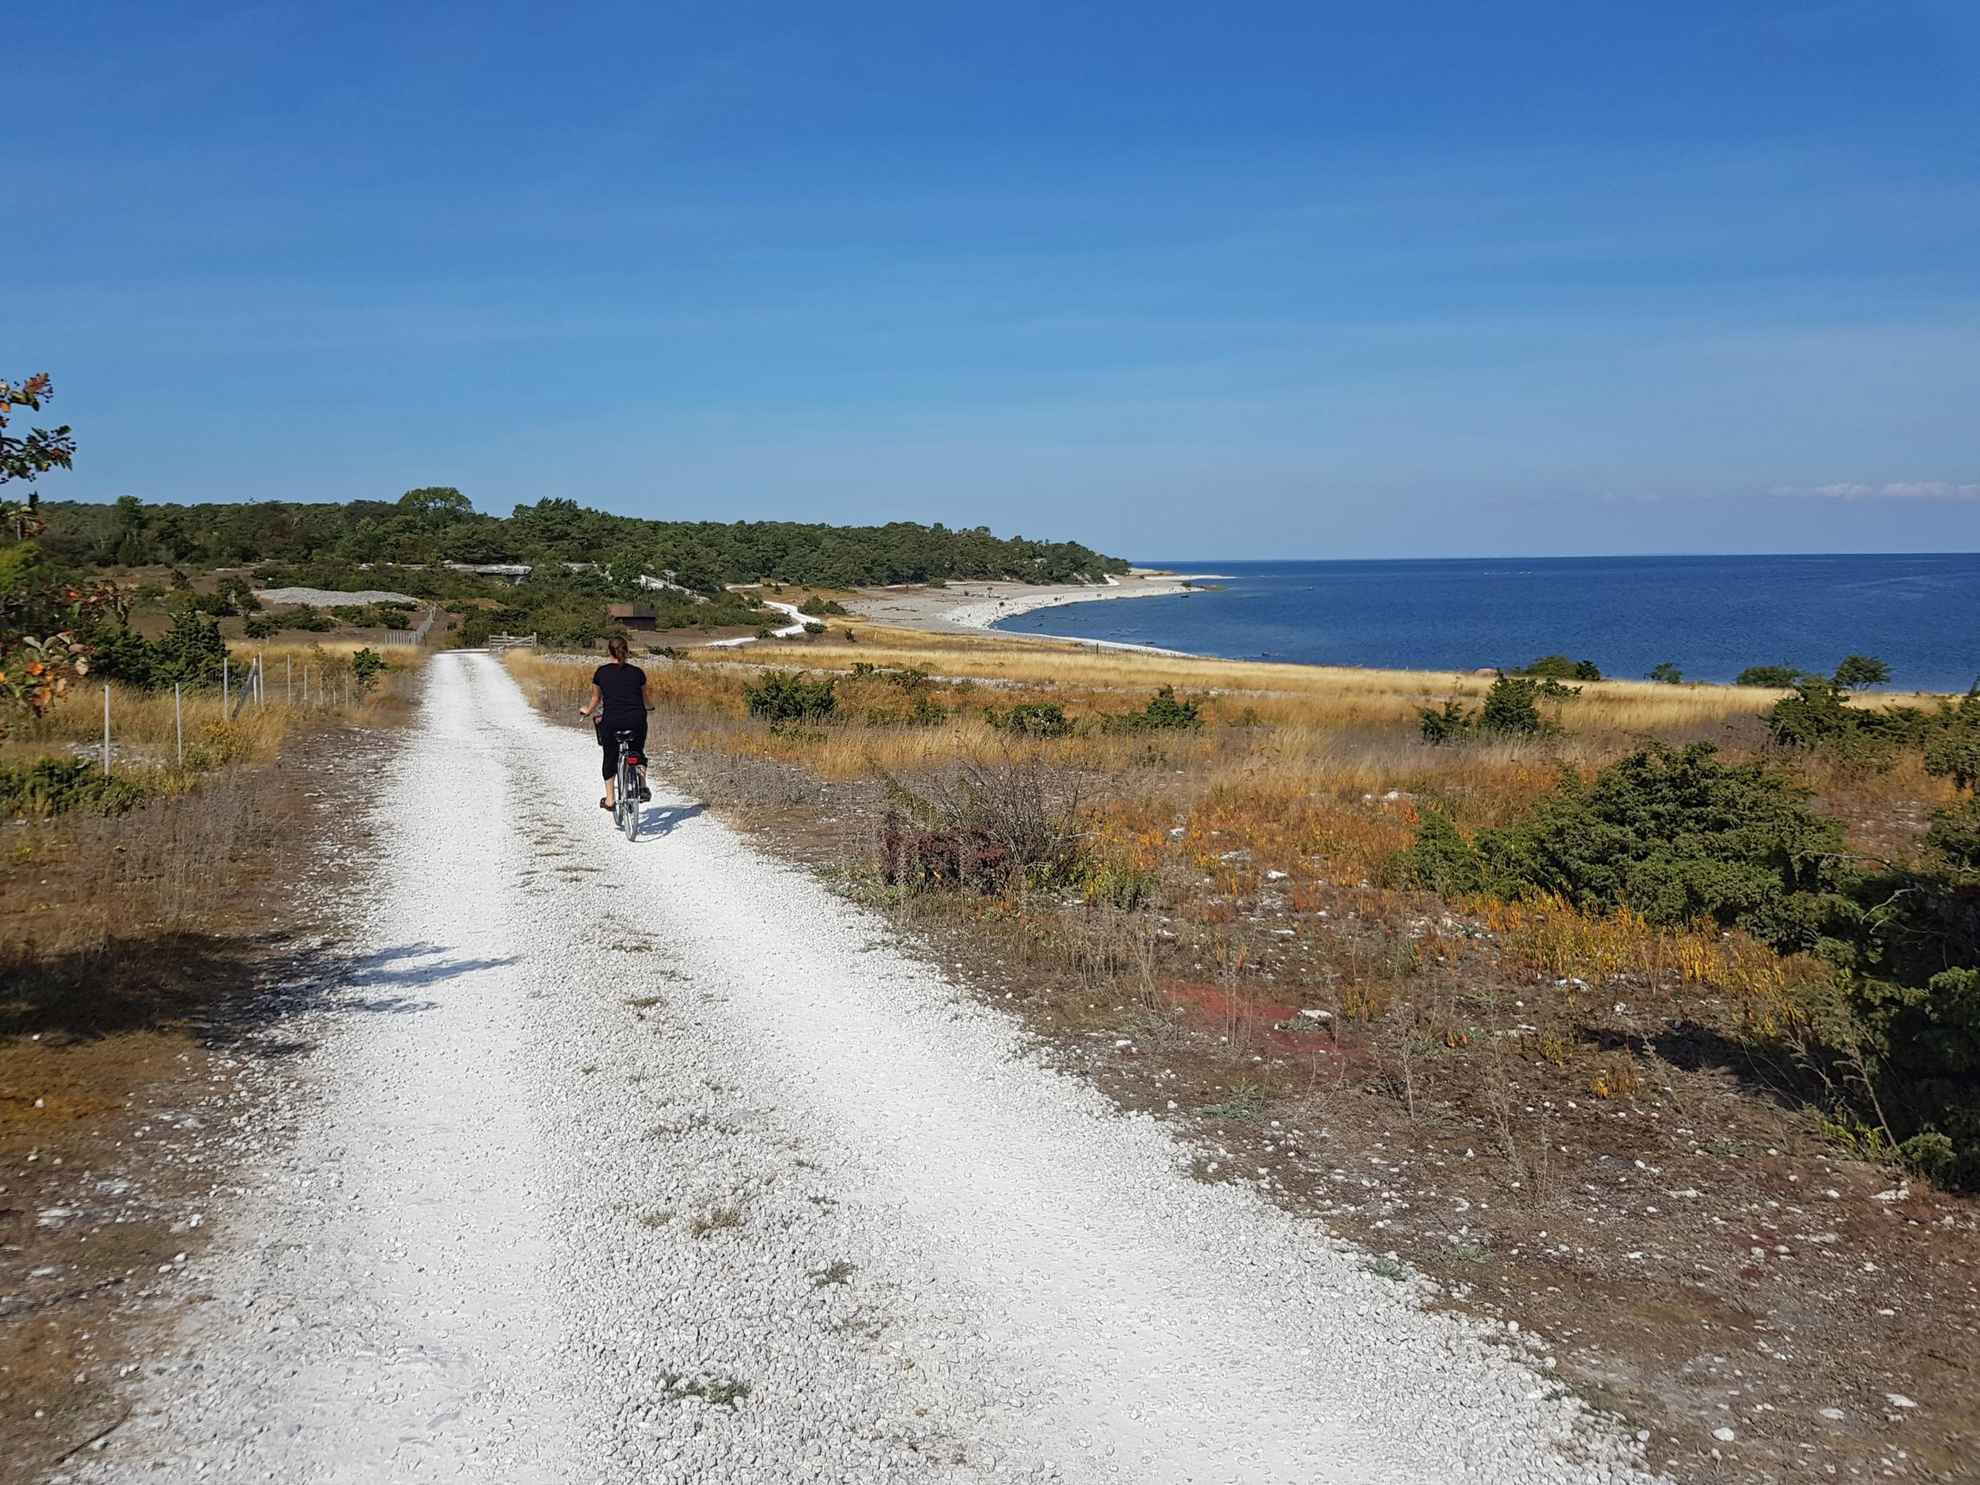 Een persoon fietst op een landweg langs de zee op Gotland. Veld met geel gras en kleine struiken aan de zijkanten van de weg.